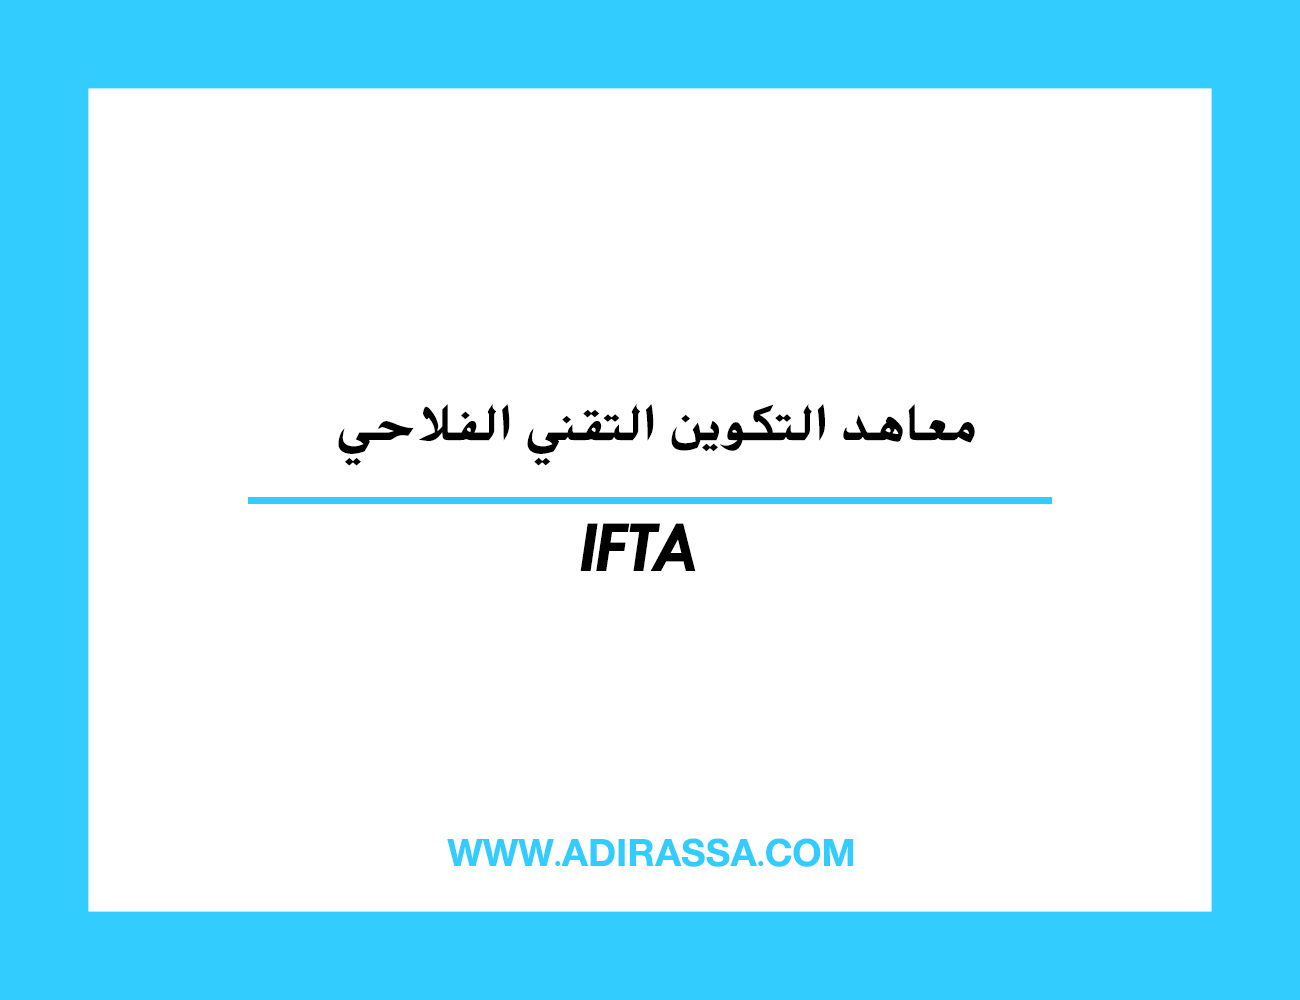 معاهد التكوين التقني الفلاحي IFTA المتخصصة في عدة مدن مغربية